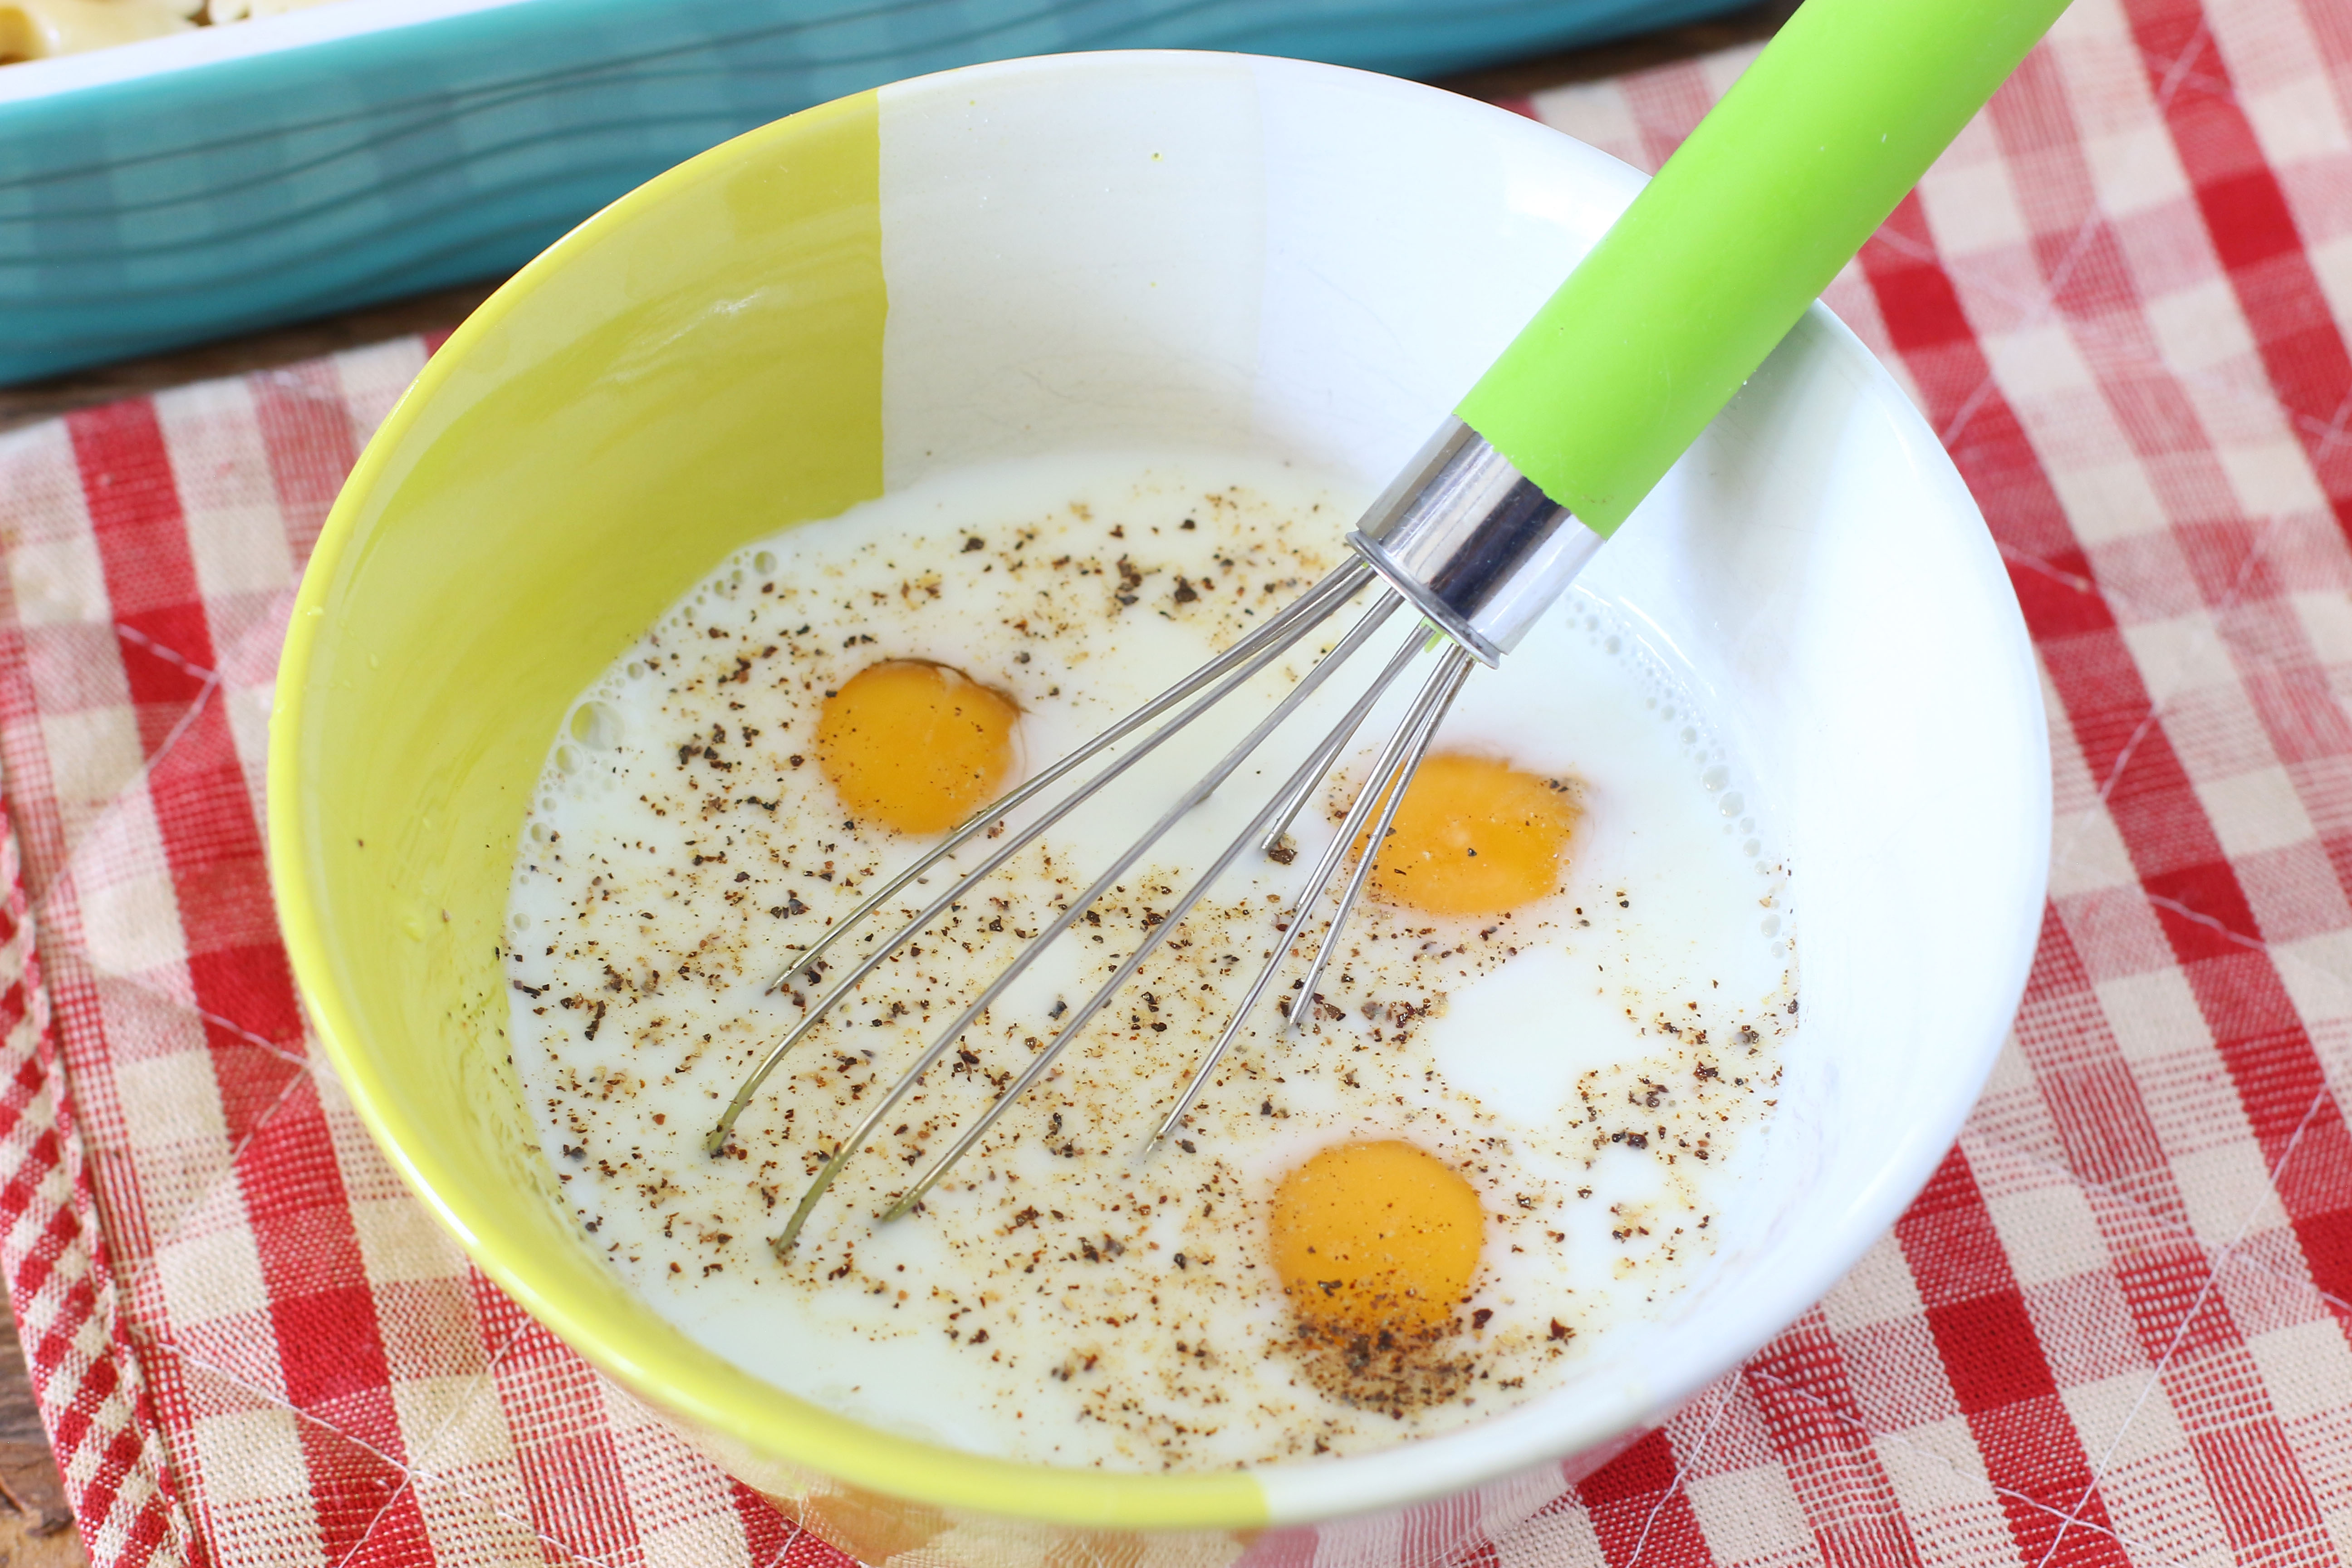 Яйца взбить с молоком, посолить, поперчить и залить тофу с овощами. Довести до готовности как обычный омлет.